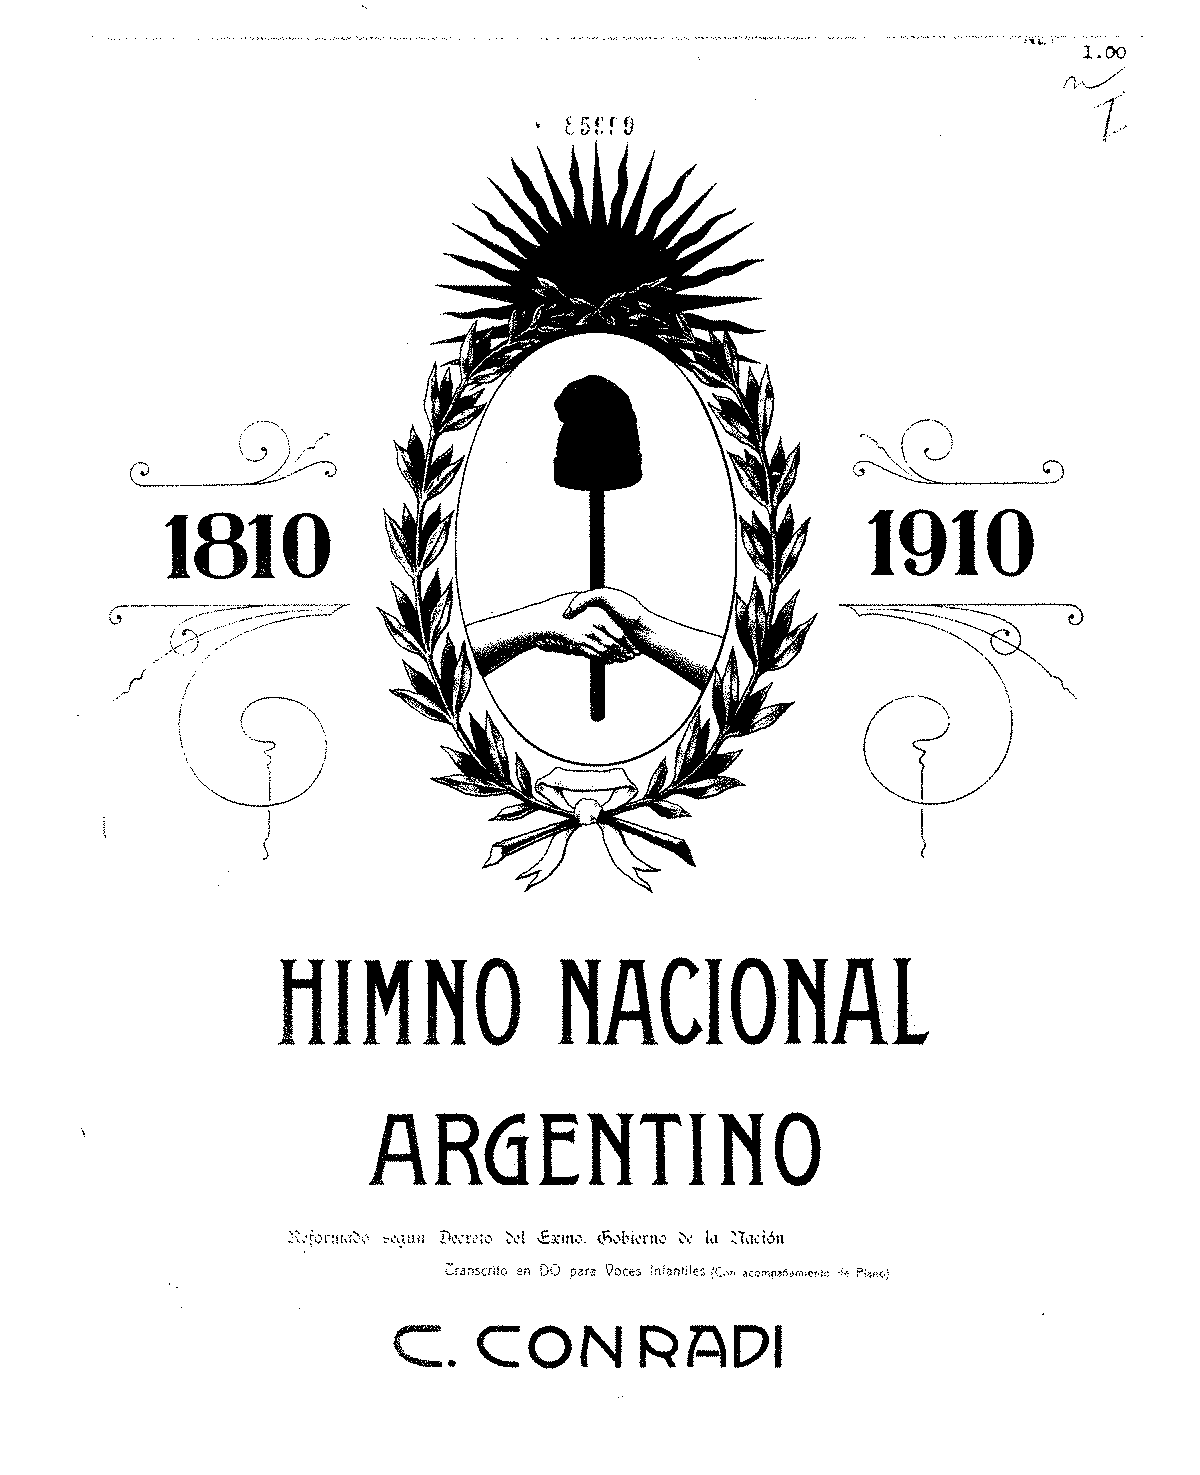 himno nacional argentino midi